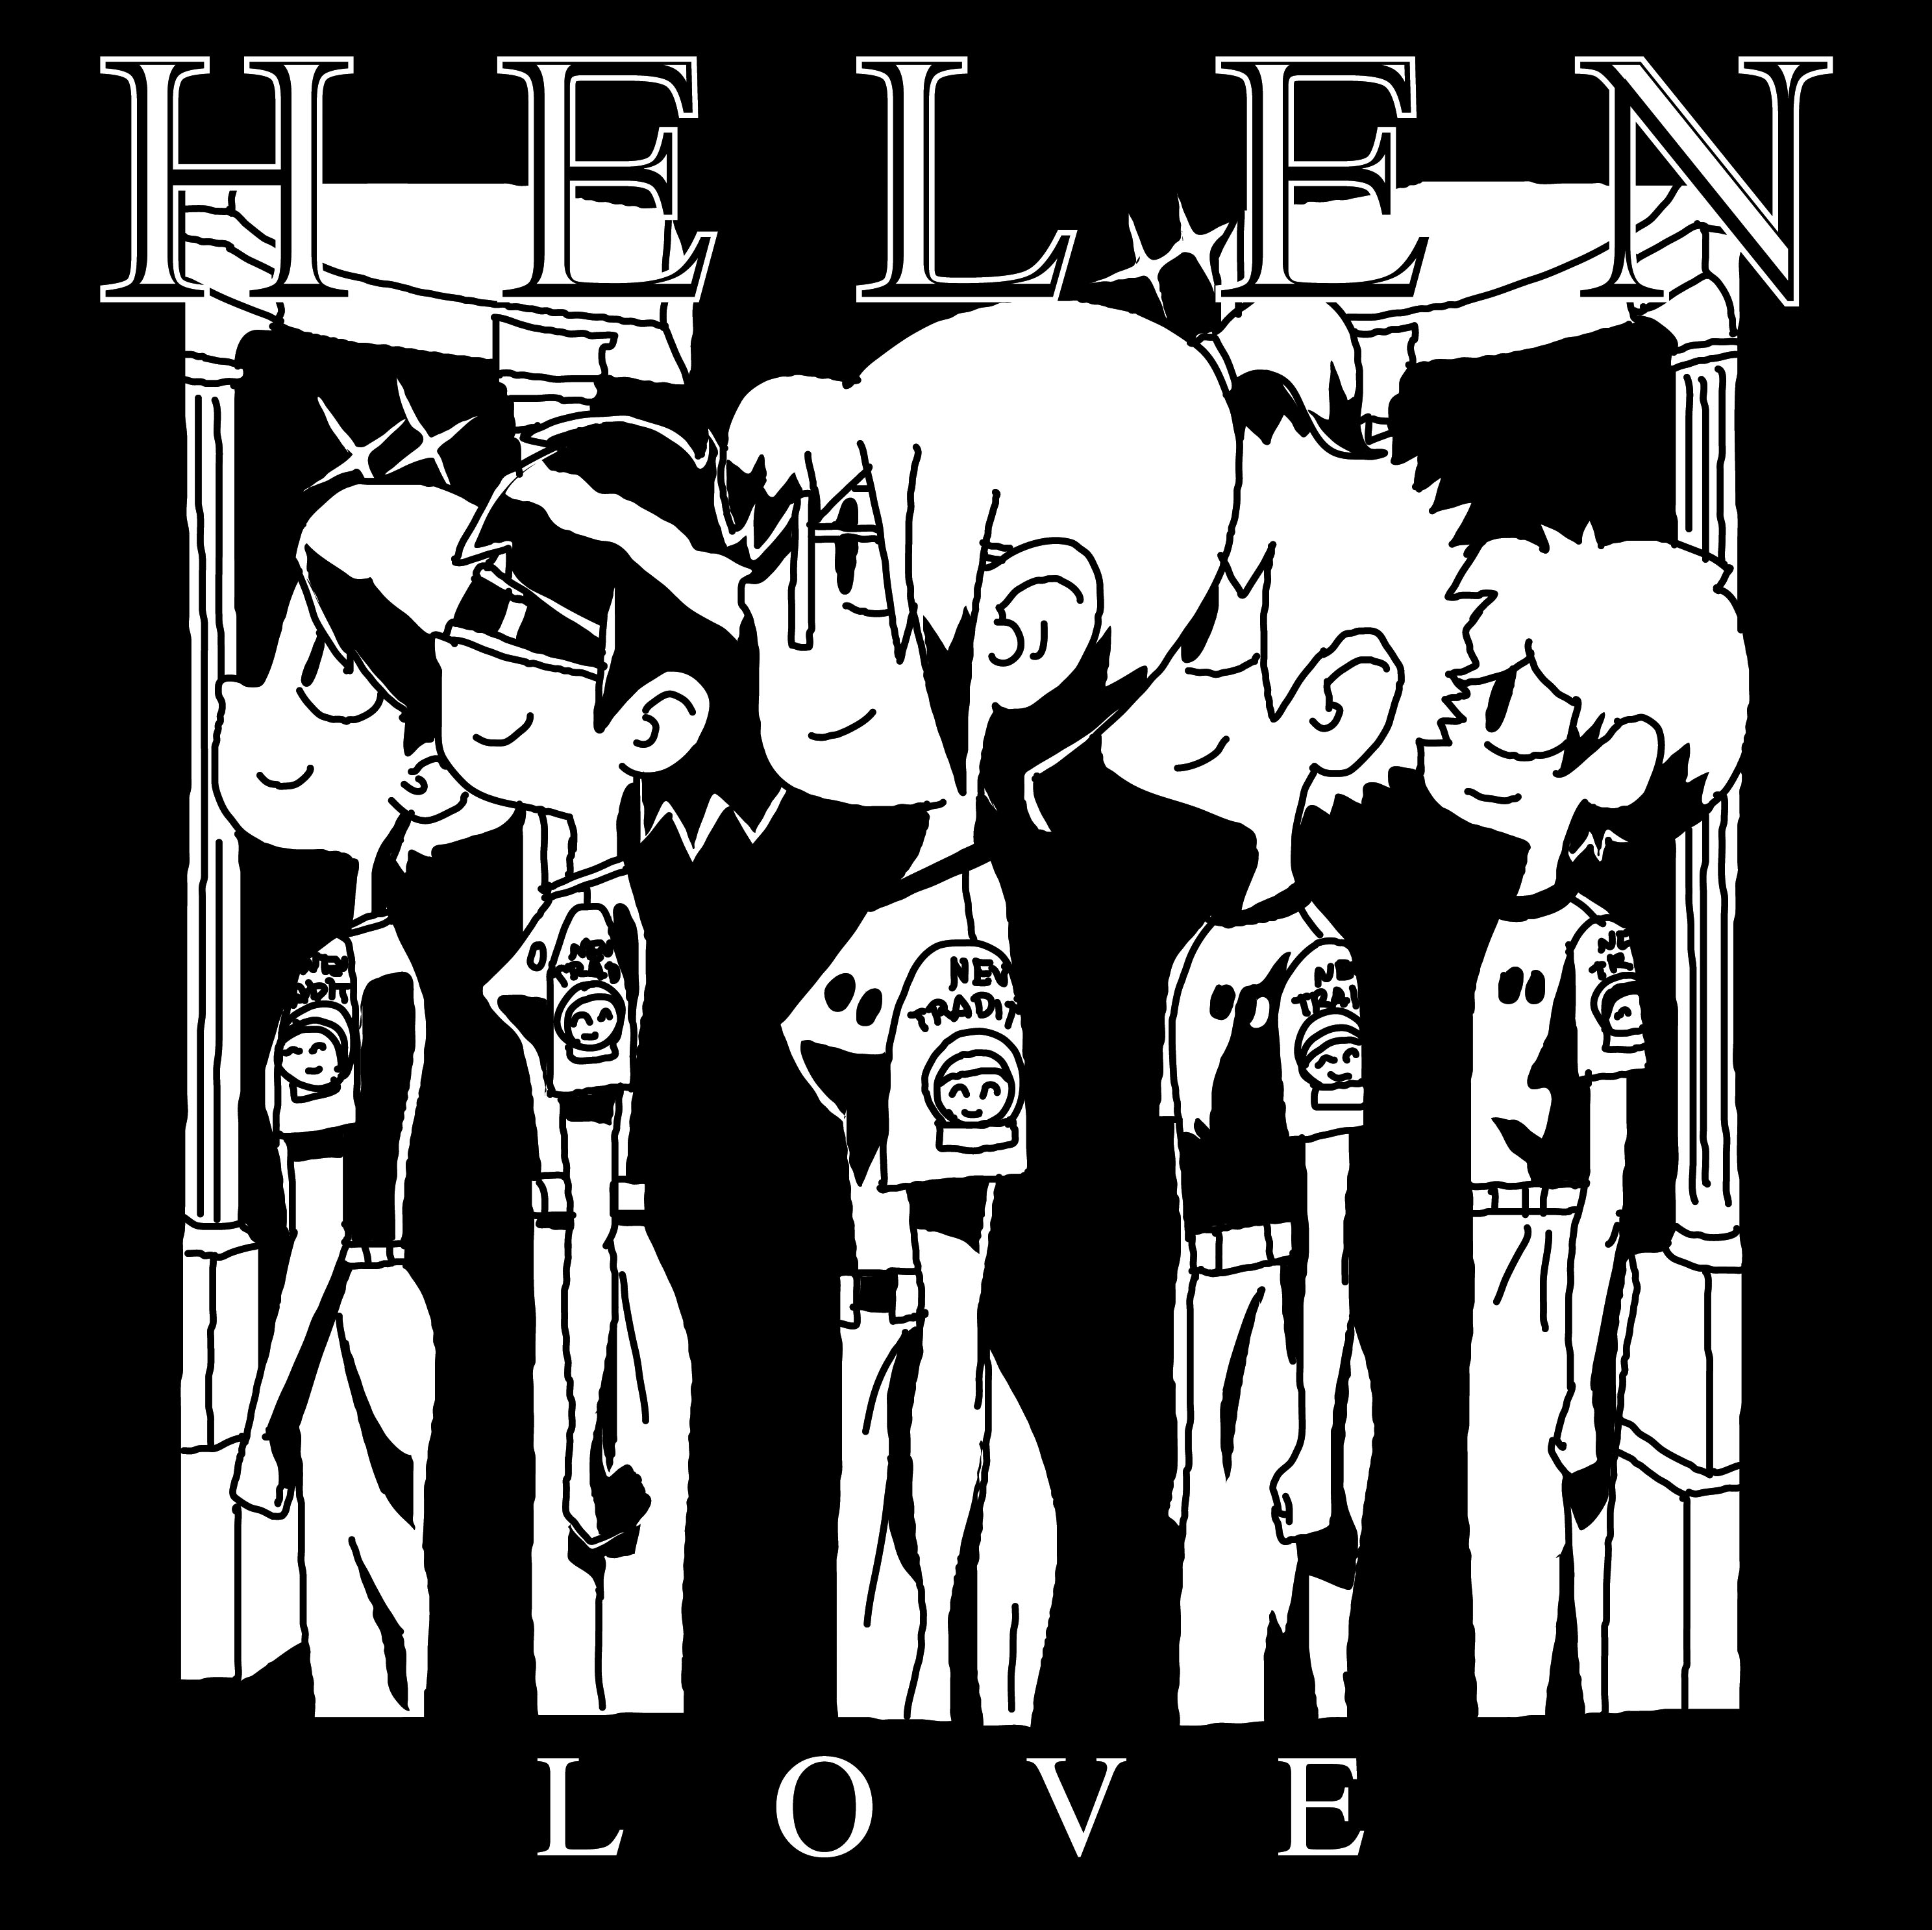 Helen Love Vs Devo [Photo promo "Day-Glo Dreams"] 